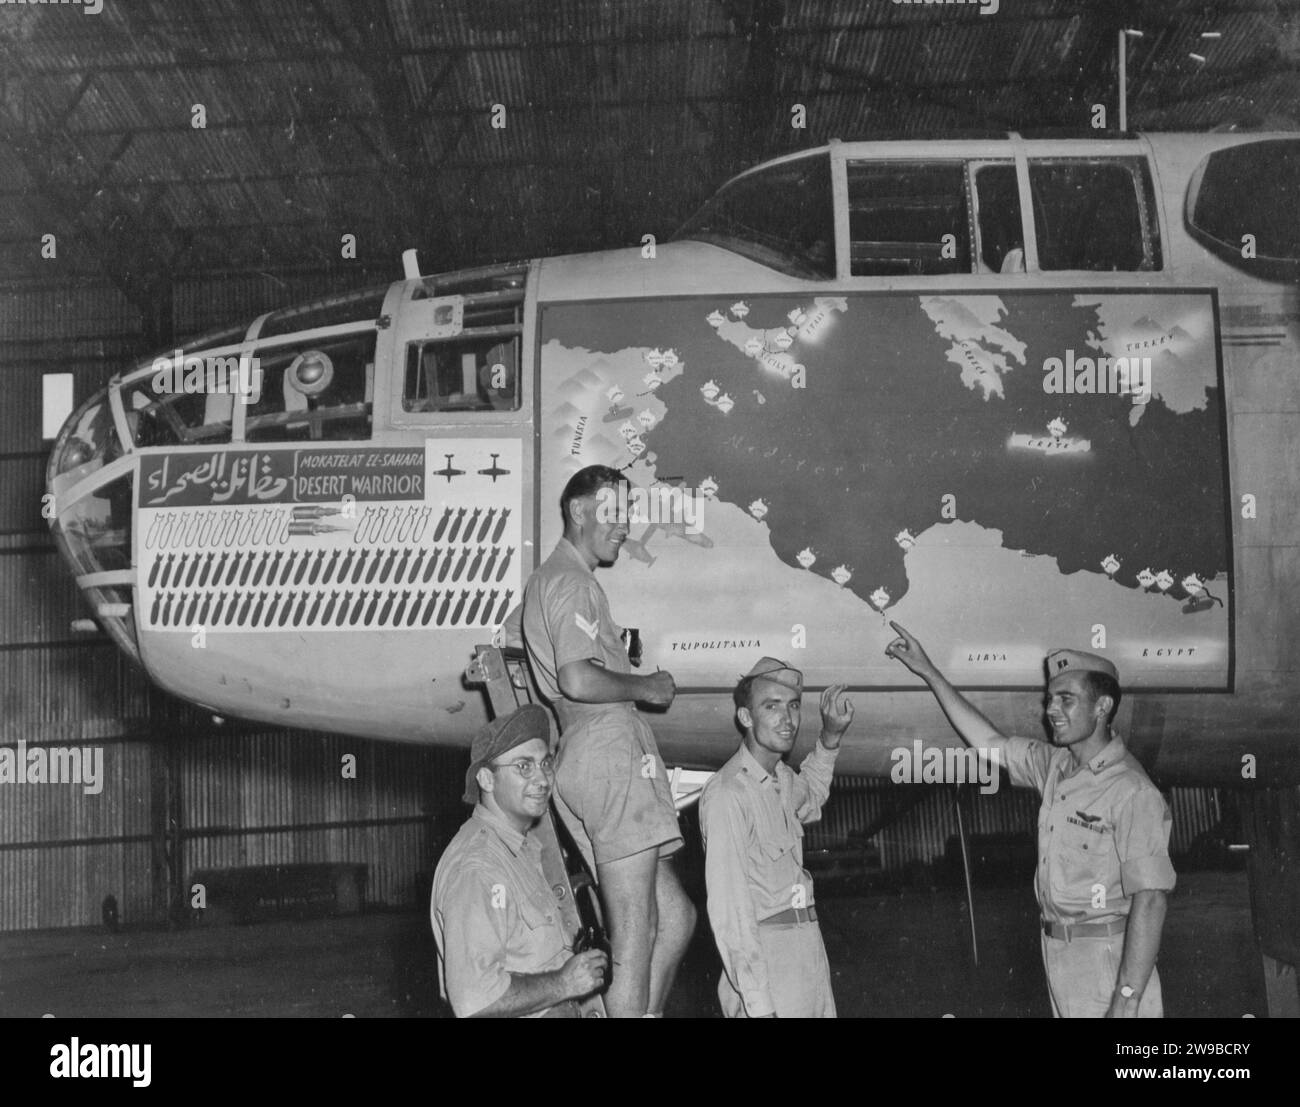 Il B-25 nordamericano, il "GUERRIERO DEL DESERTO", è stato decorato in preparazione al ritorno negli Stati Uniti. Le bombe sulla calandra rappresentano le missioni che questo aereo ha compiuto, da El Alamein alla Sicilia. Foto Stock